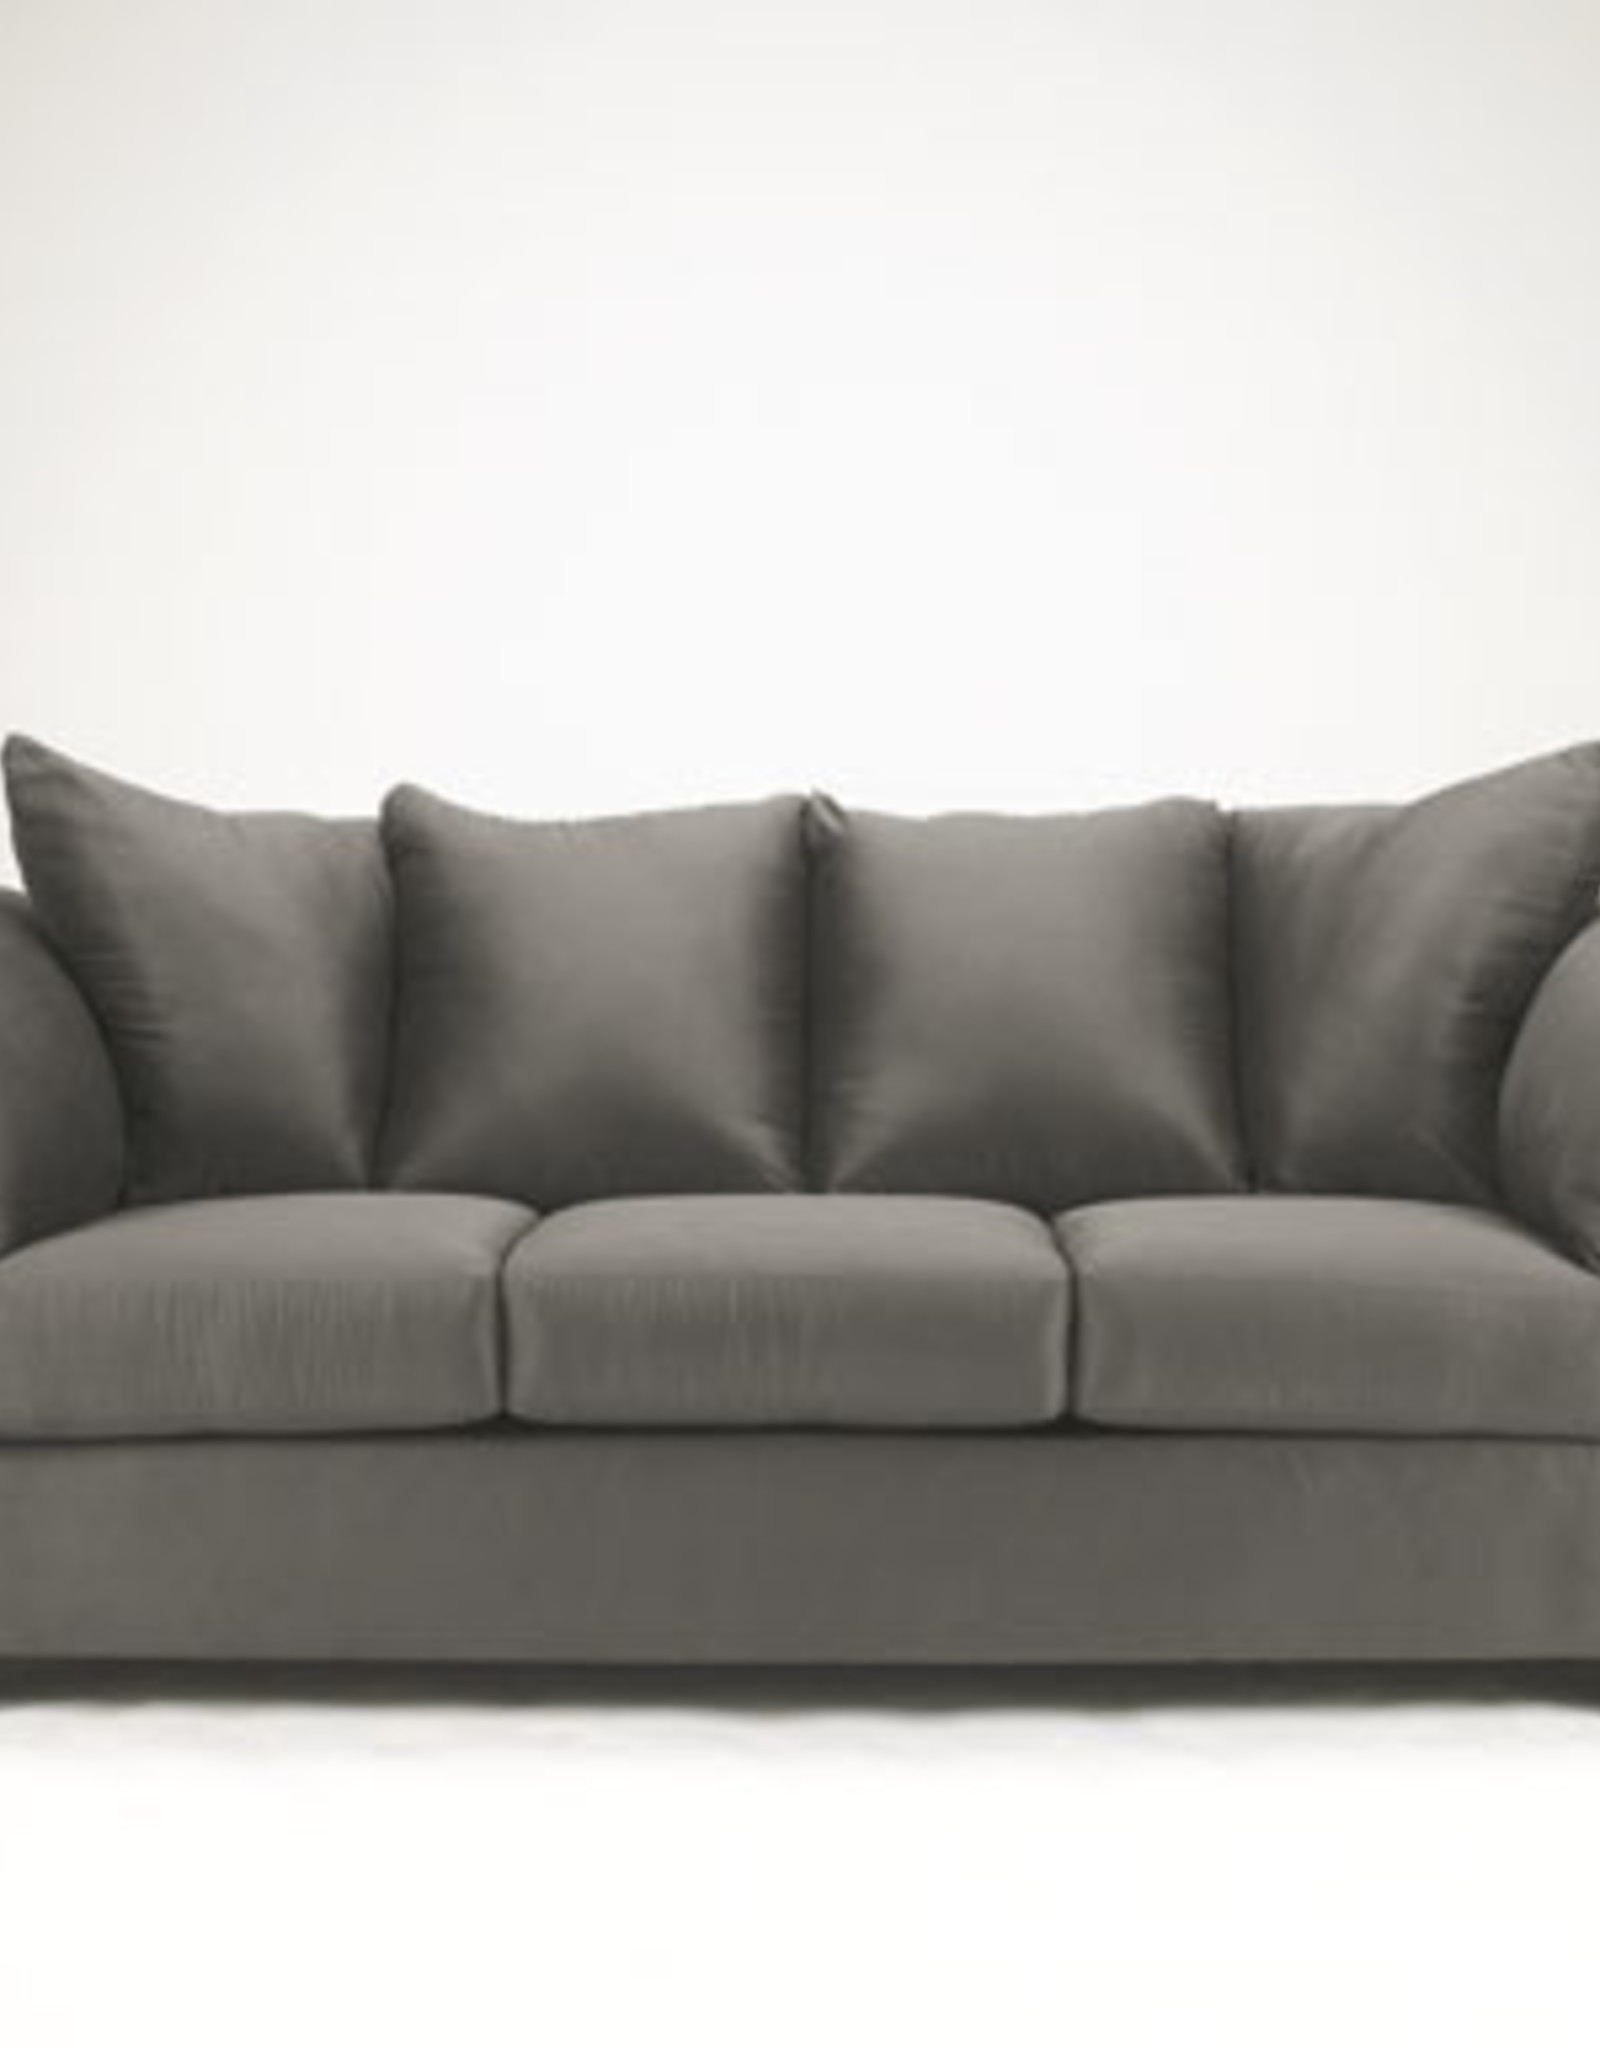 Darcy Sofa (Cobblestone)